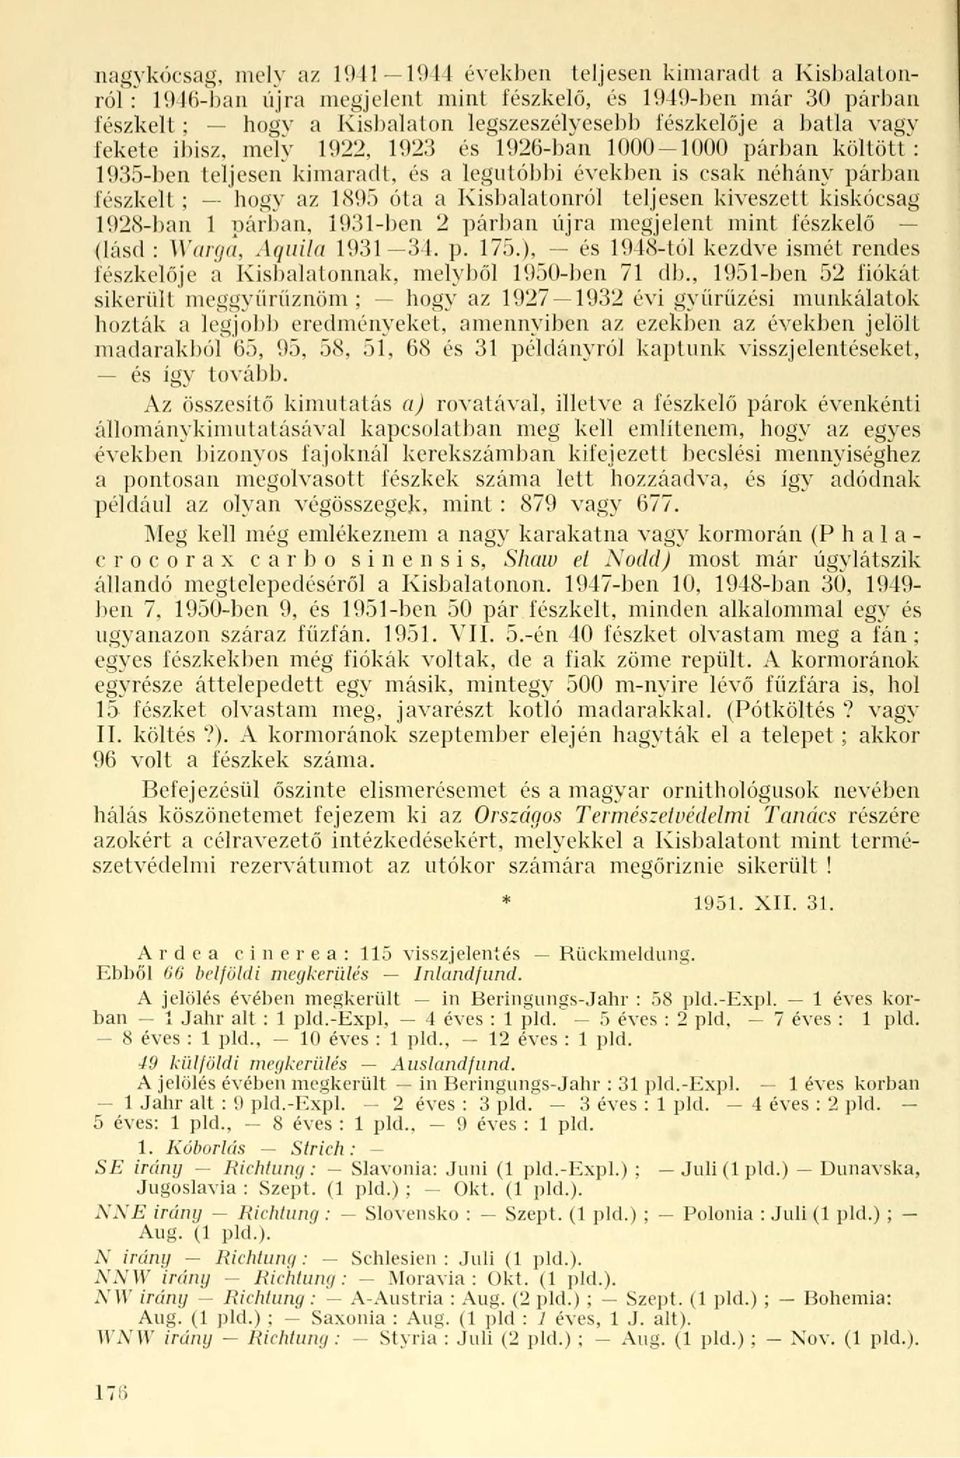 teljesen kiveszett kiskócsag 1928-ban 1 párban, 1931-ben 2 párban újra megjelent mint fészkelő (lásd : Warga, Aquila 1931 34. p. 15.